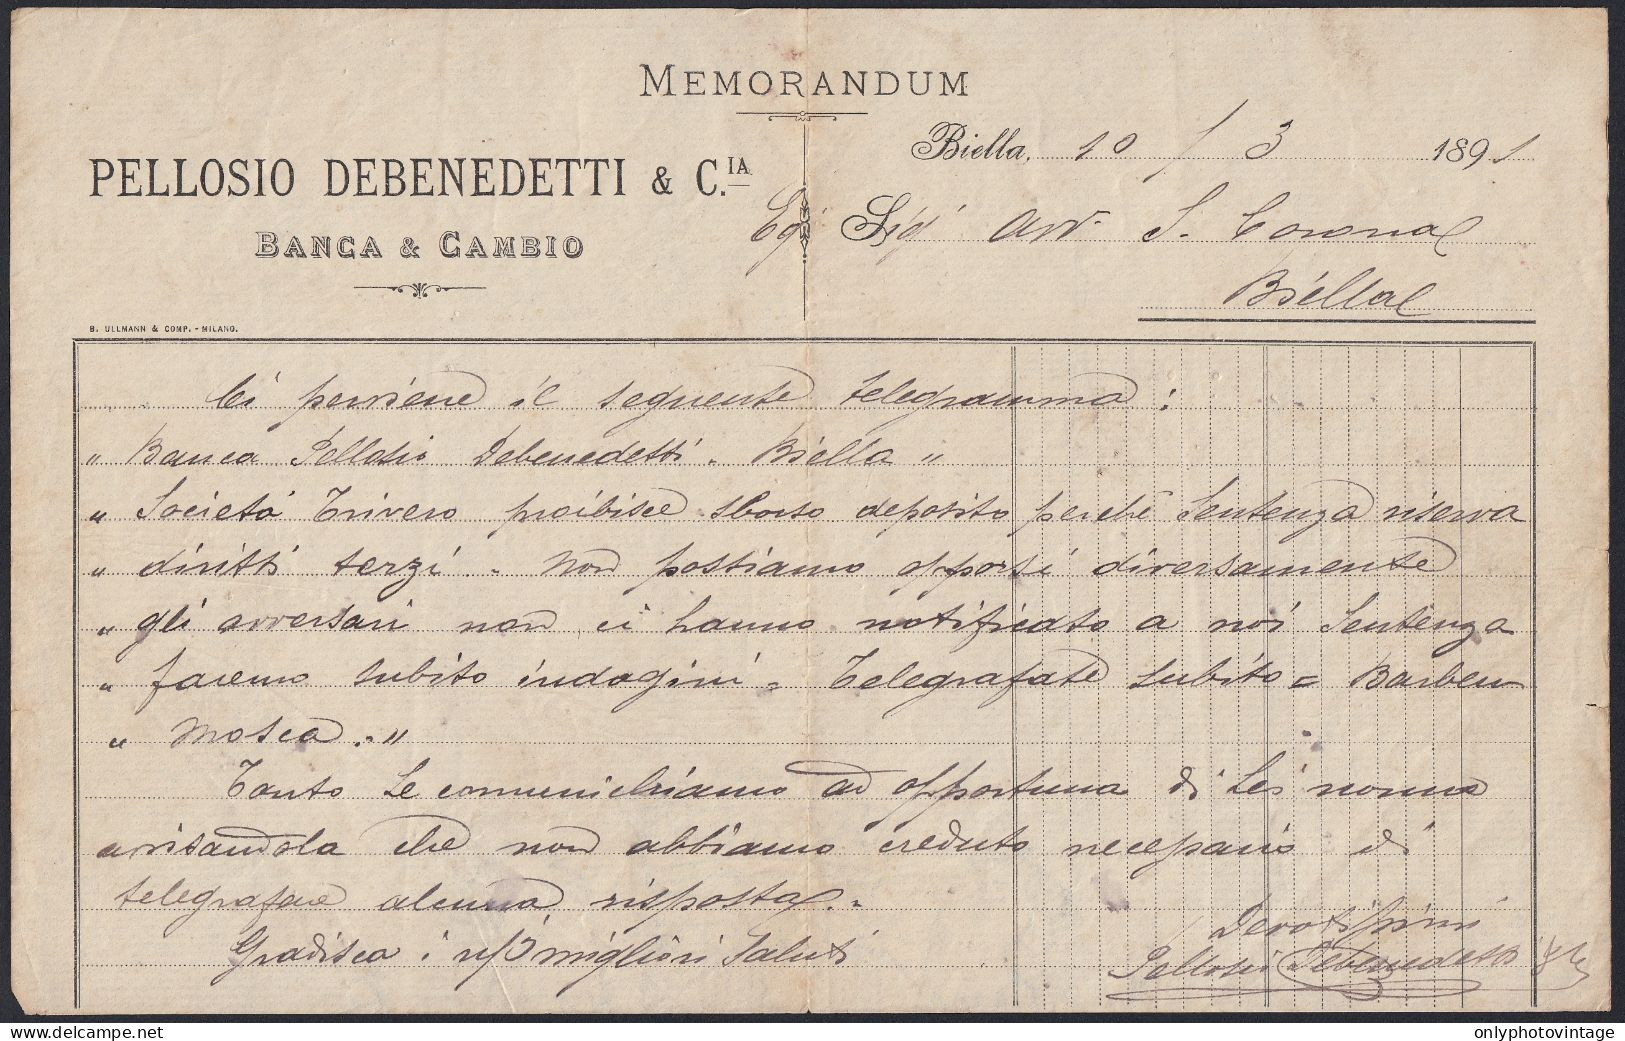 Biella 1891 - Pellosio Debenedetti - Banca & Cambio - Memorandum - Italia